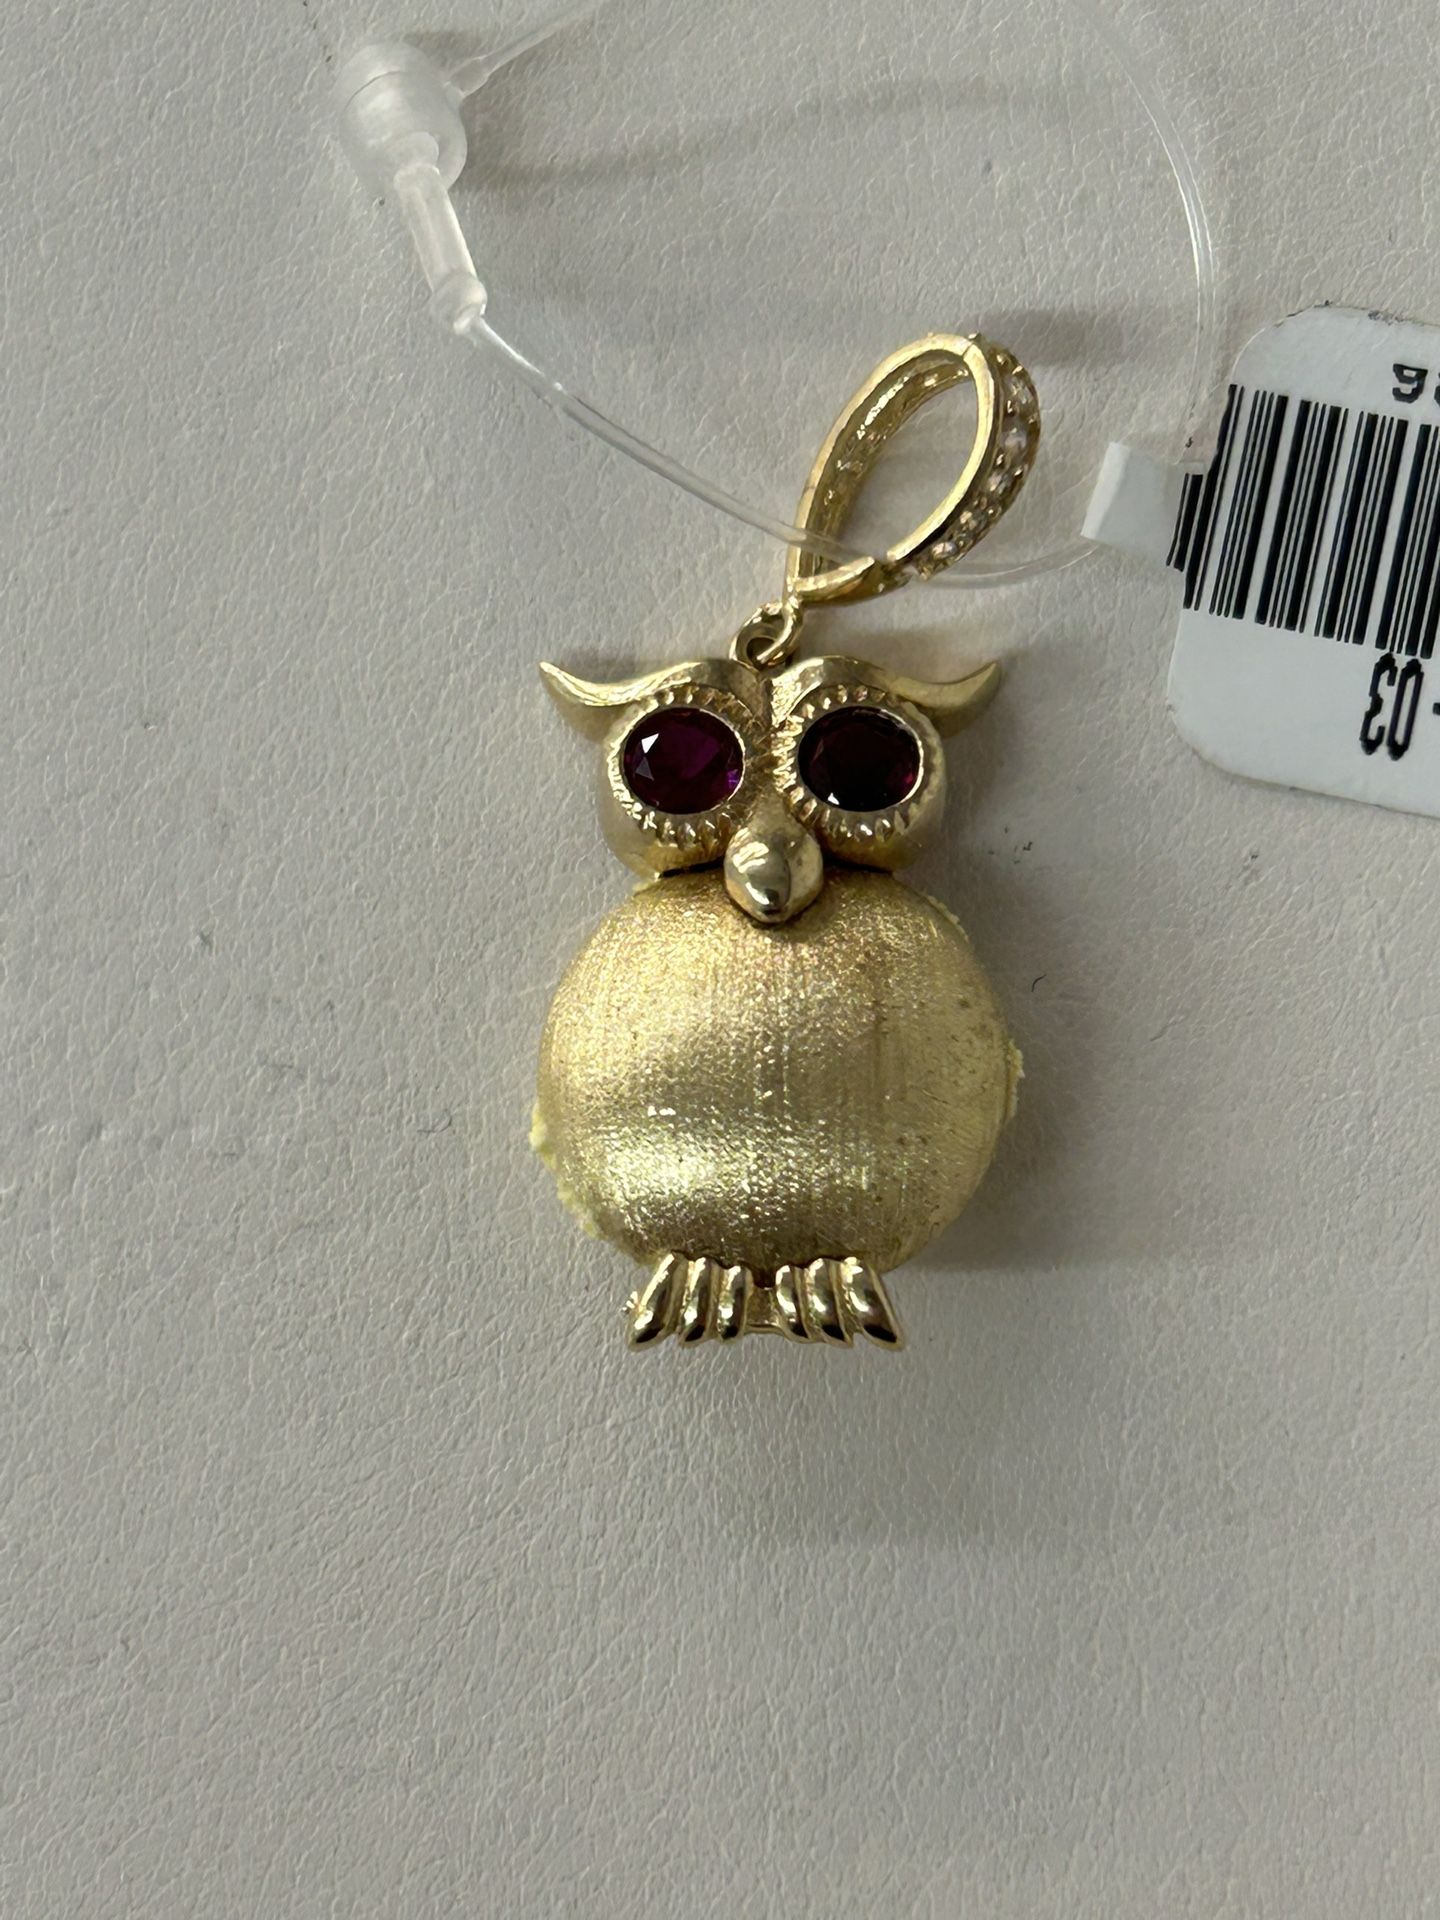 Fcp2344 14k Gold Owl Pendant 